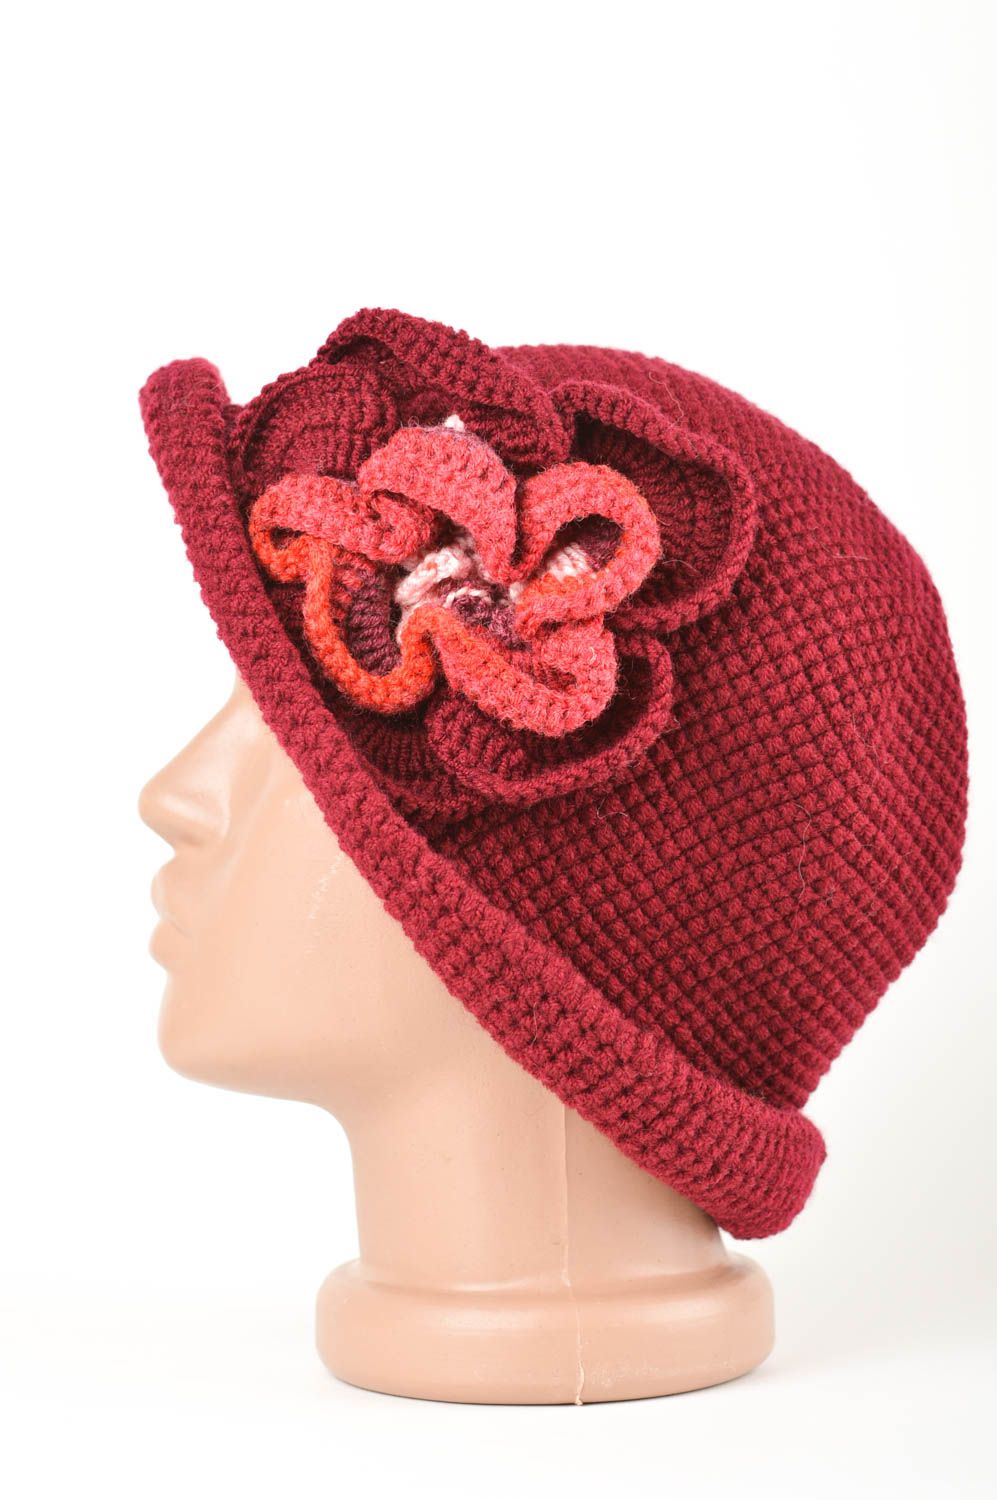 Bonnet tricot fait main Vêtement femme rouge foncé avec fleur Cadeau original photo 3